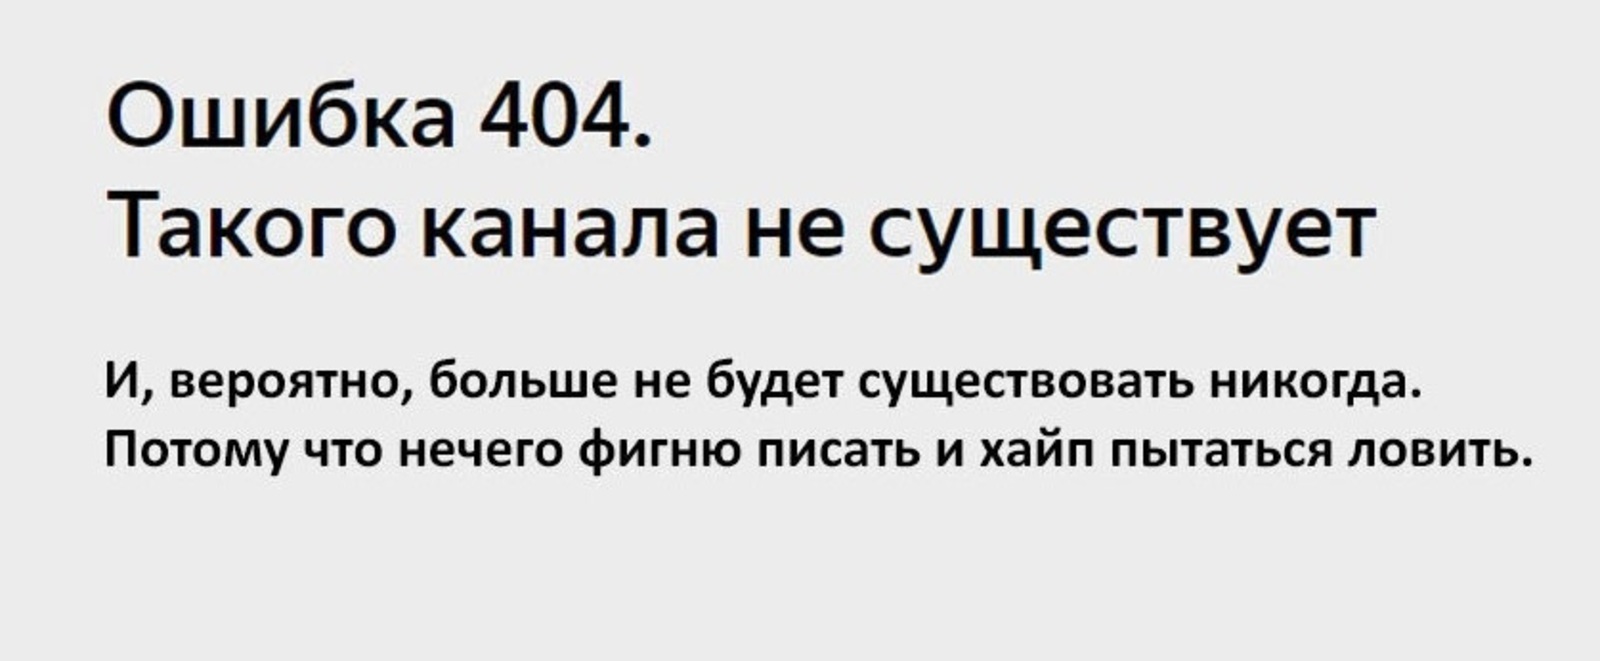 В Башкирии заблокировали сайты, которые учили искажать показания счётчиков ЖКХ